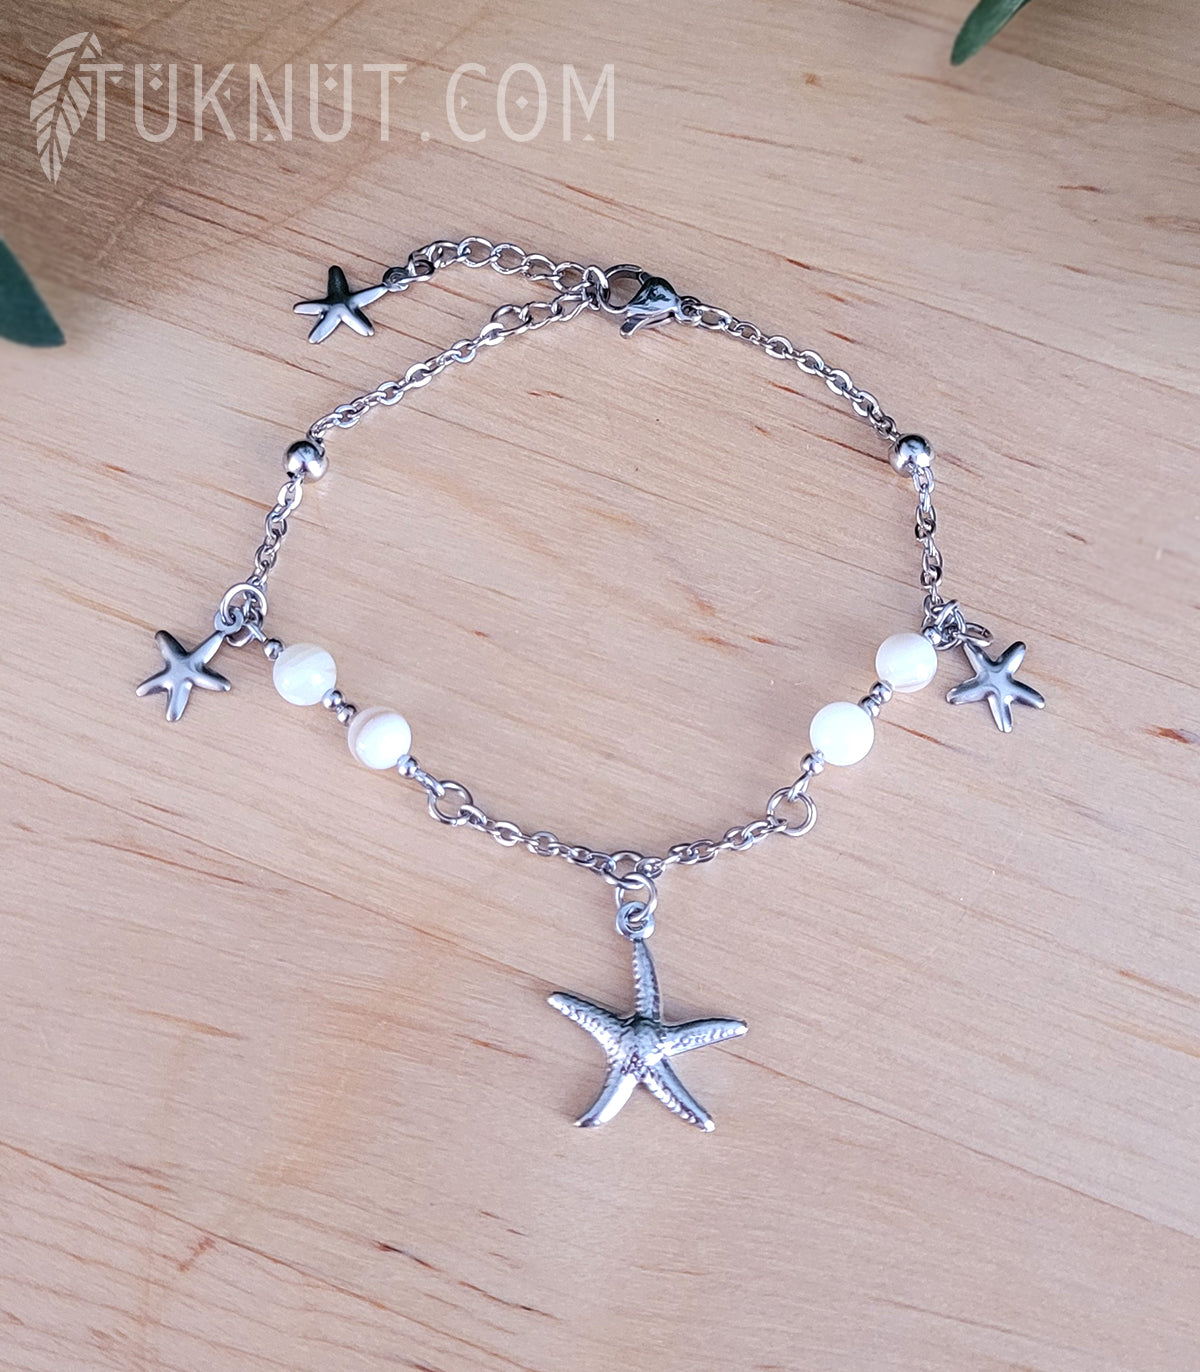 Bracelet avec pendentifs (étoile de mer) en acier inoxydable avec nacre de perle (couleurs : argent, blanc et beige) TUKNUT